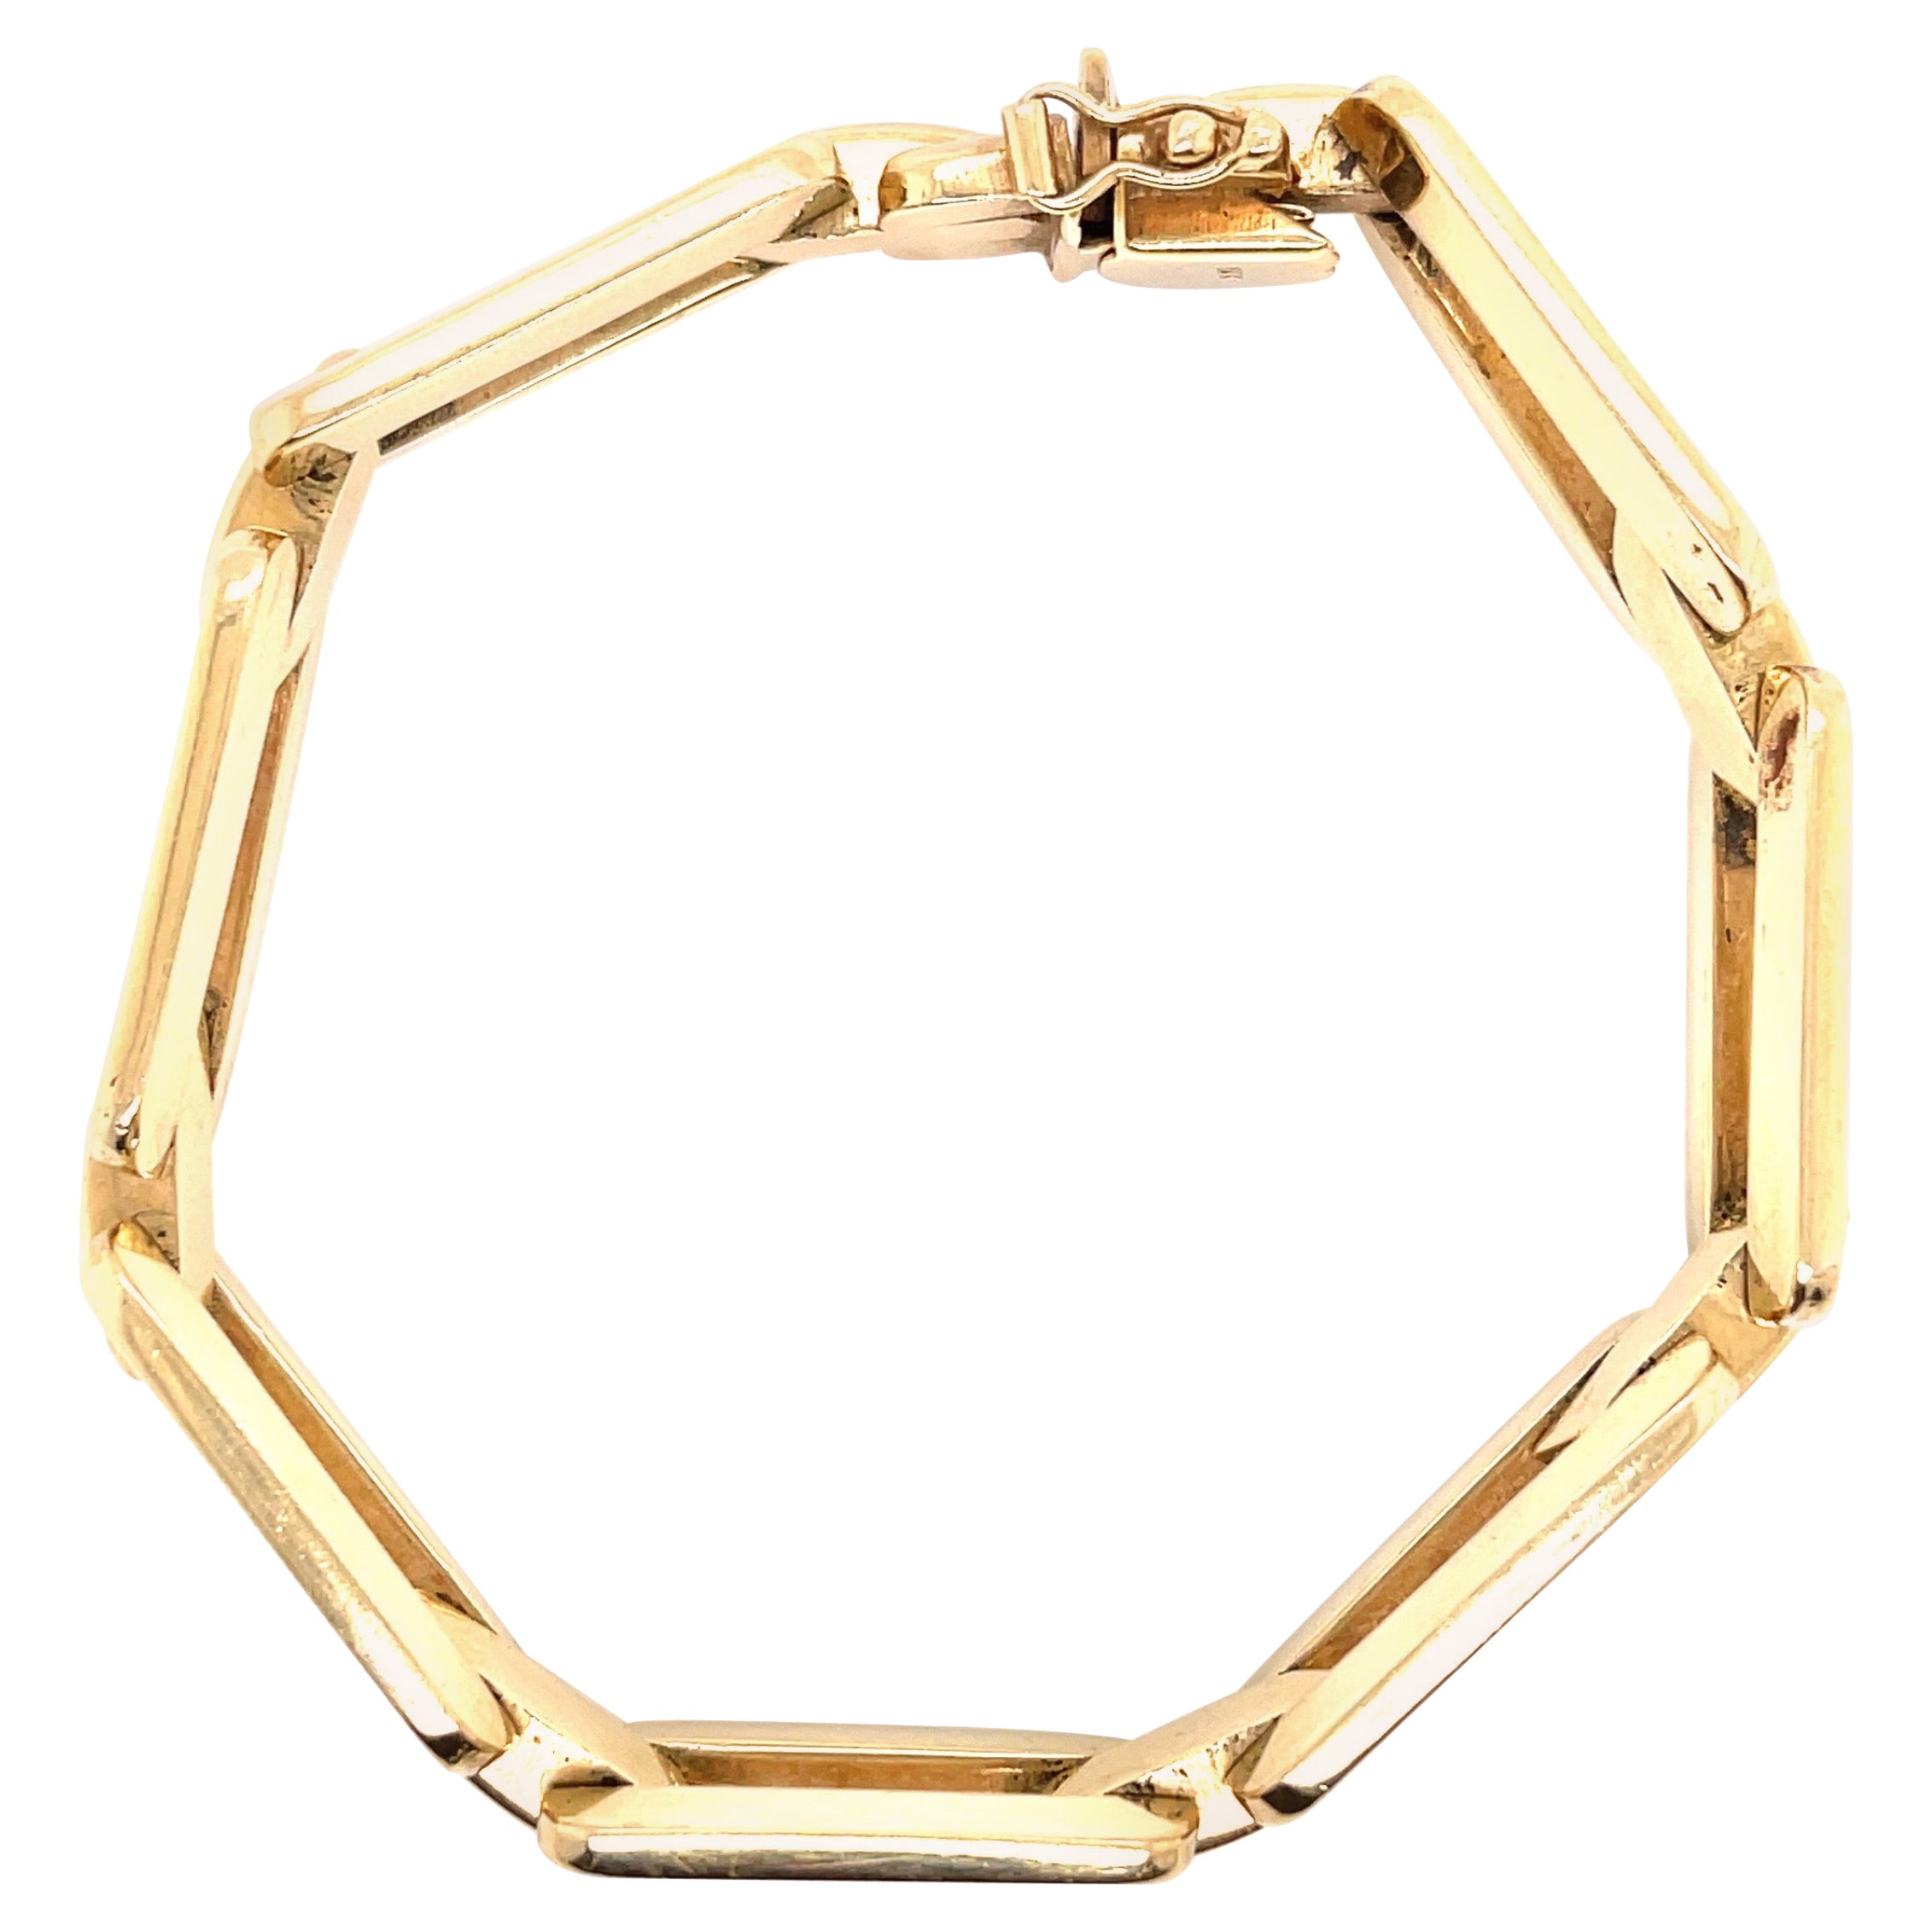 Gold Link Bracelet 24 g. For Sale